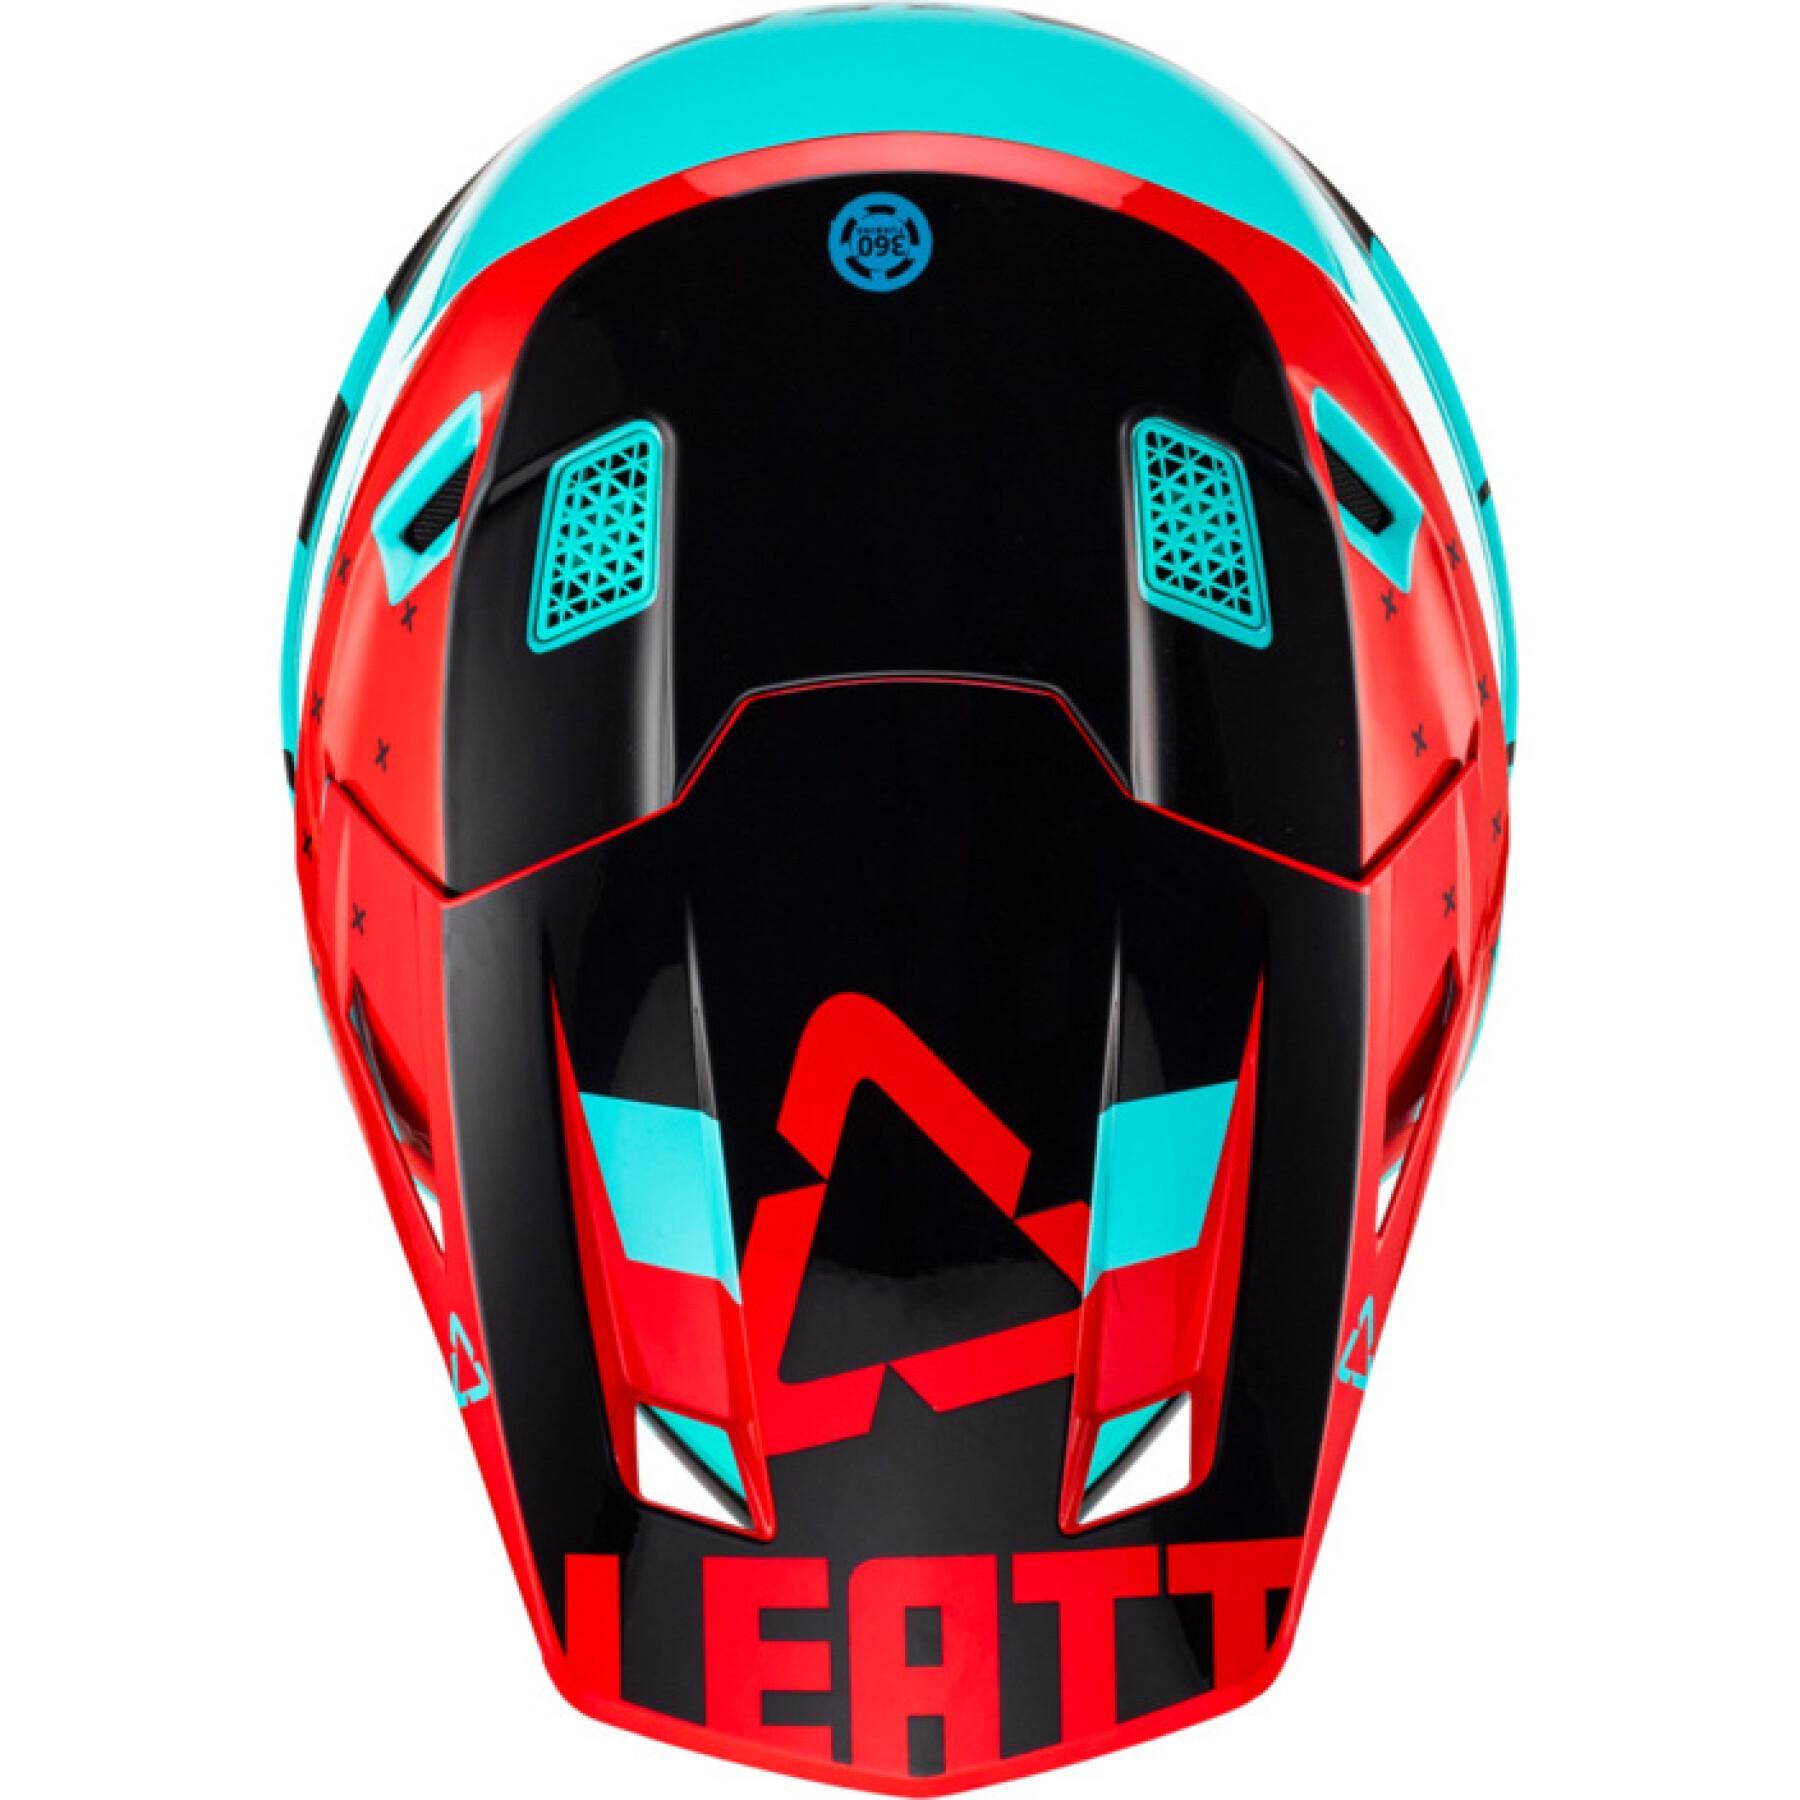 Kit de capacete de motociclista com óculos de protecção Leatt 7.5 23